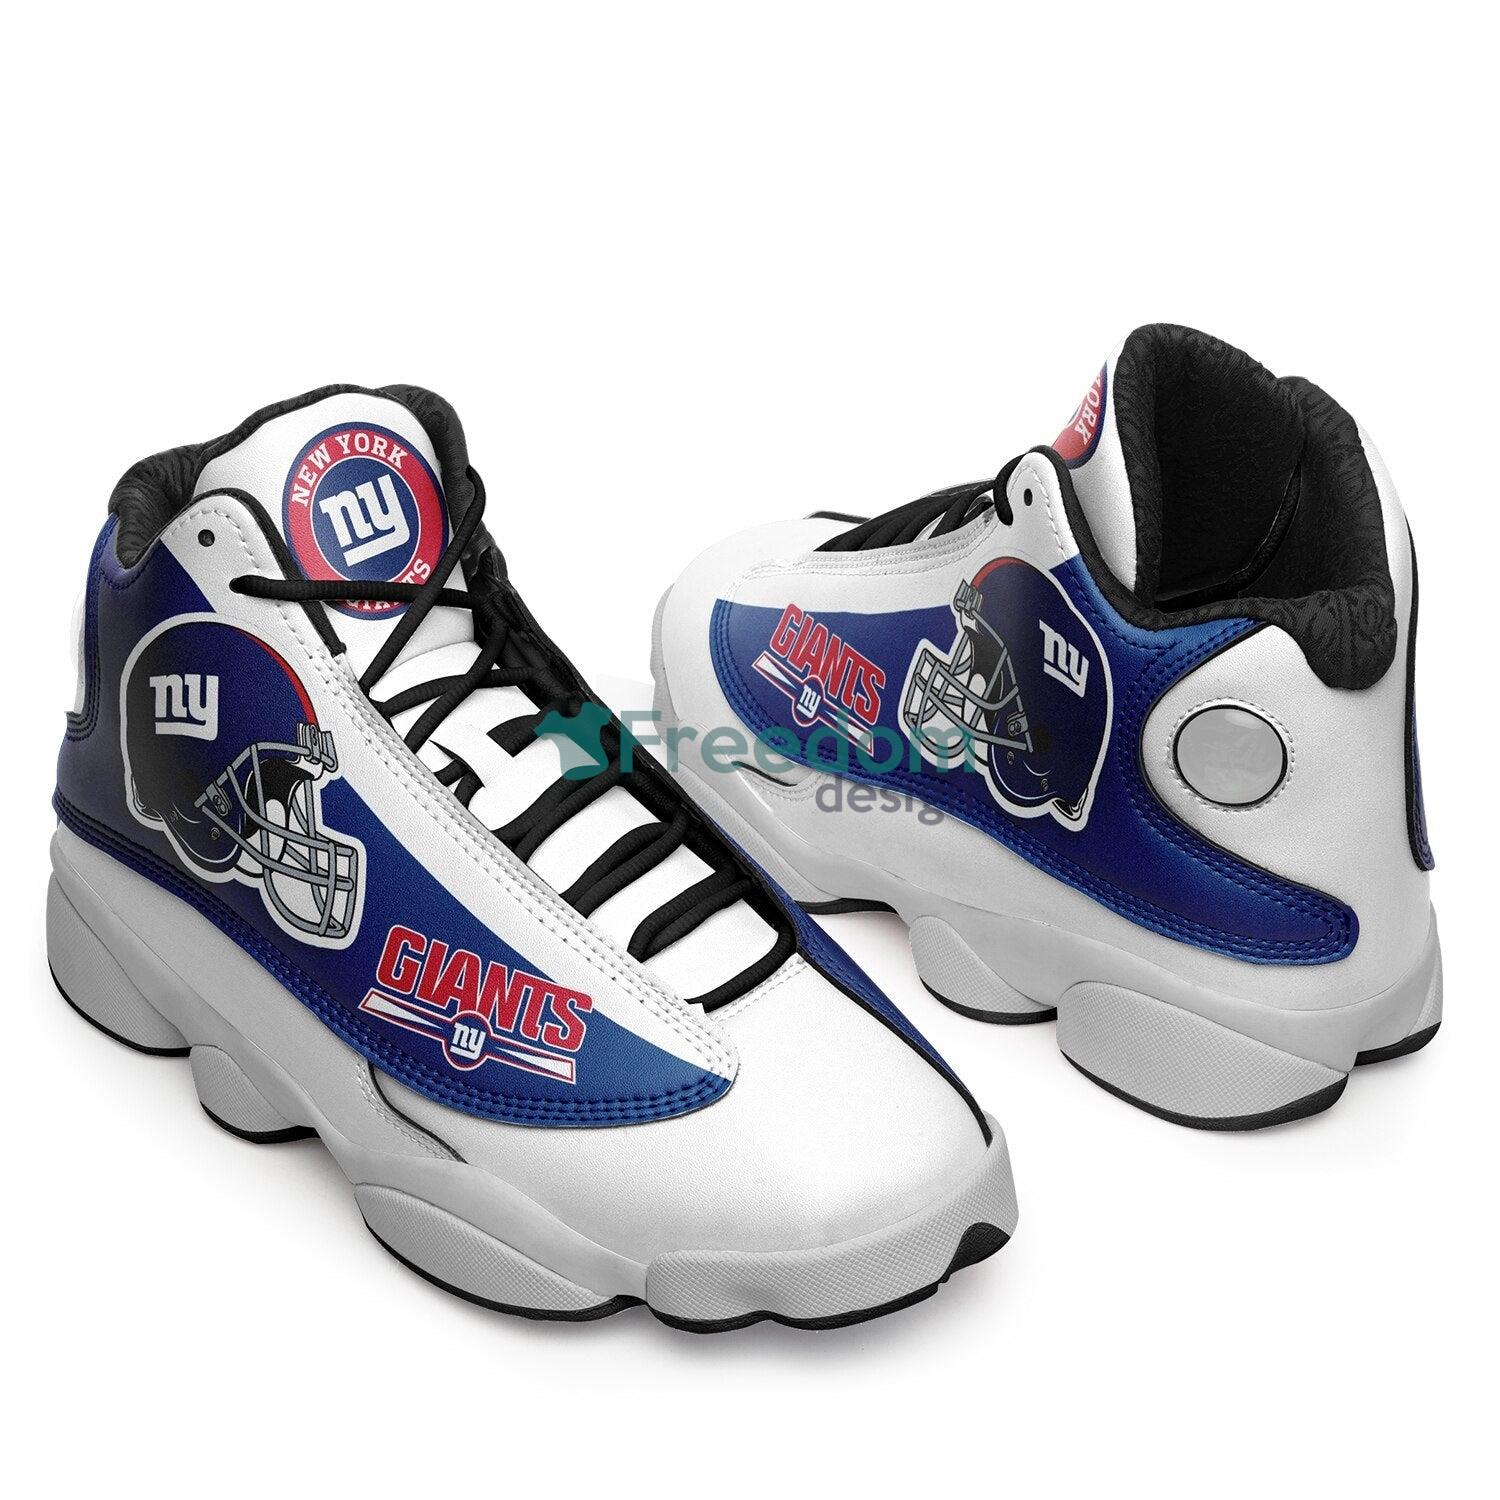 New York Giants Team Air Jordan 13 Sneaker Shoes For Fans